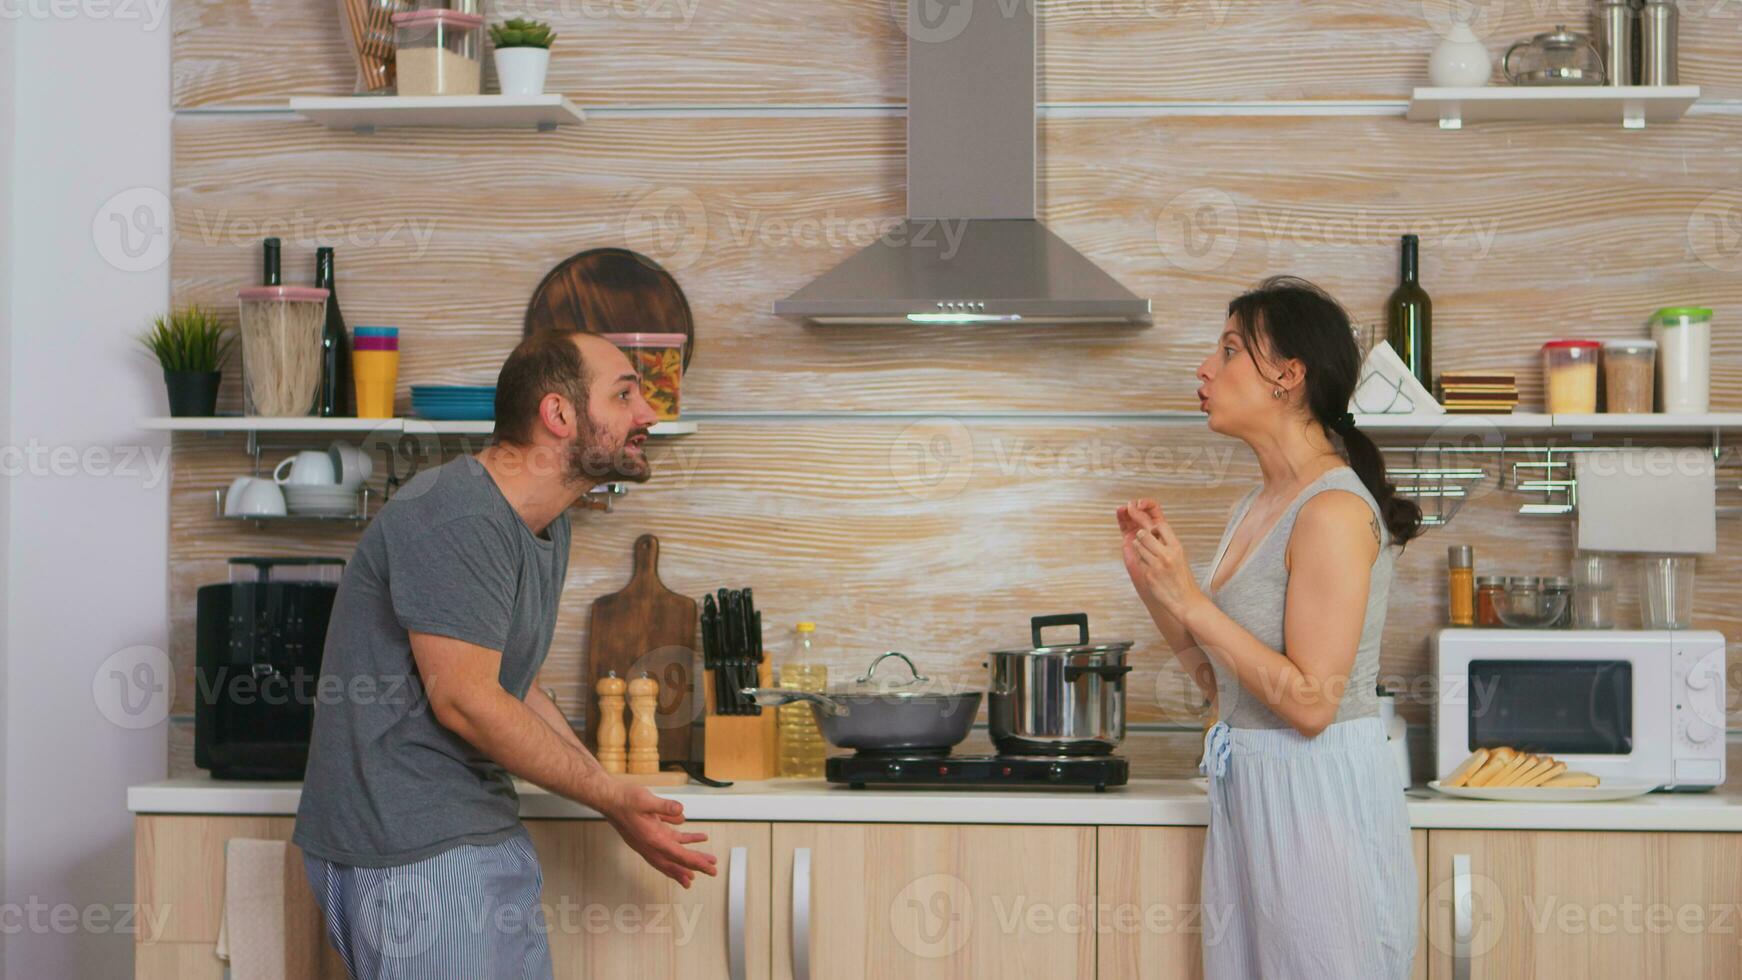 paar schreeuwen Bij elk andere in de keuken in de ochtend. jong paar ruzies in de keuken. Mens en vrouw schreeuwt in frustratie gedurende huis gesprek. foto